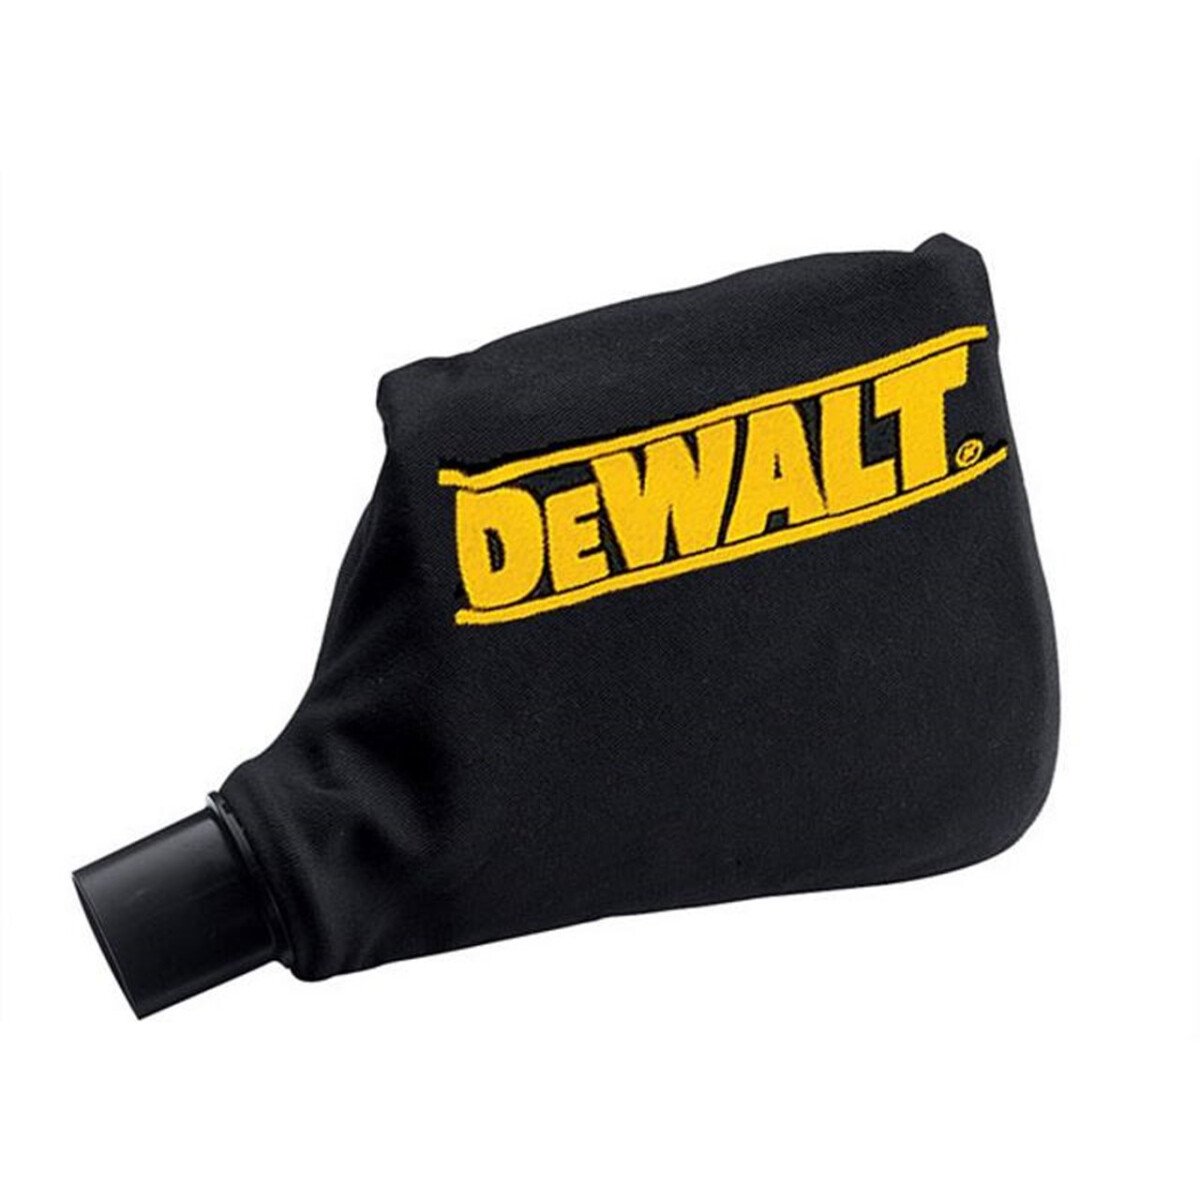 DeWalt DE7053-QZ Replacement Dust Bag for DW704 / DW705 Saws